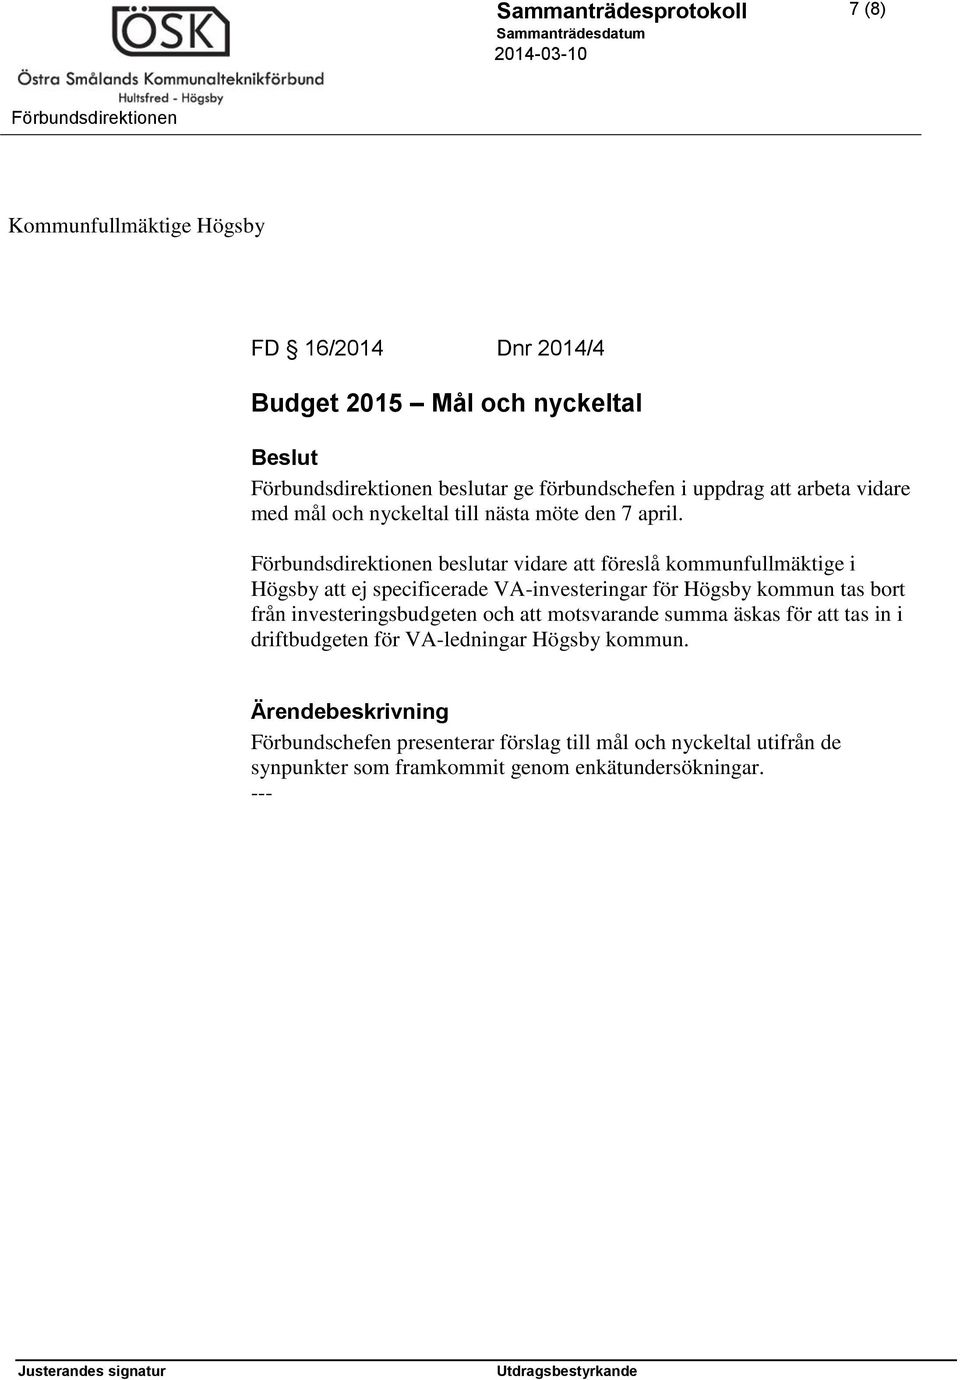 beslutar vidare att föreslå kommunfullmäktige i Högsby att ej specificerade VA-investeringar för Högsby kommun tas bort från investeringsbudgeten